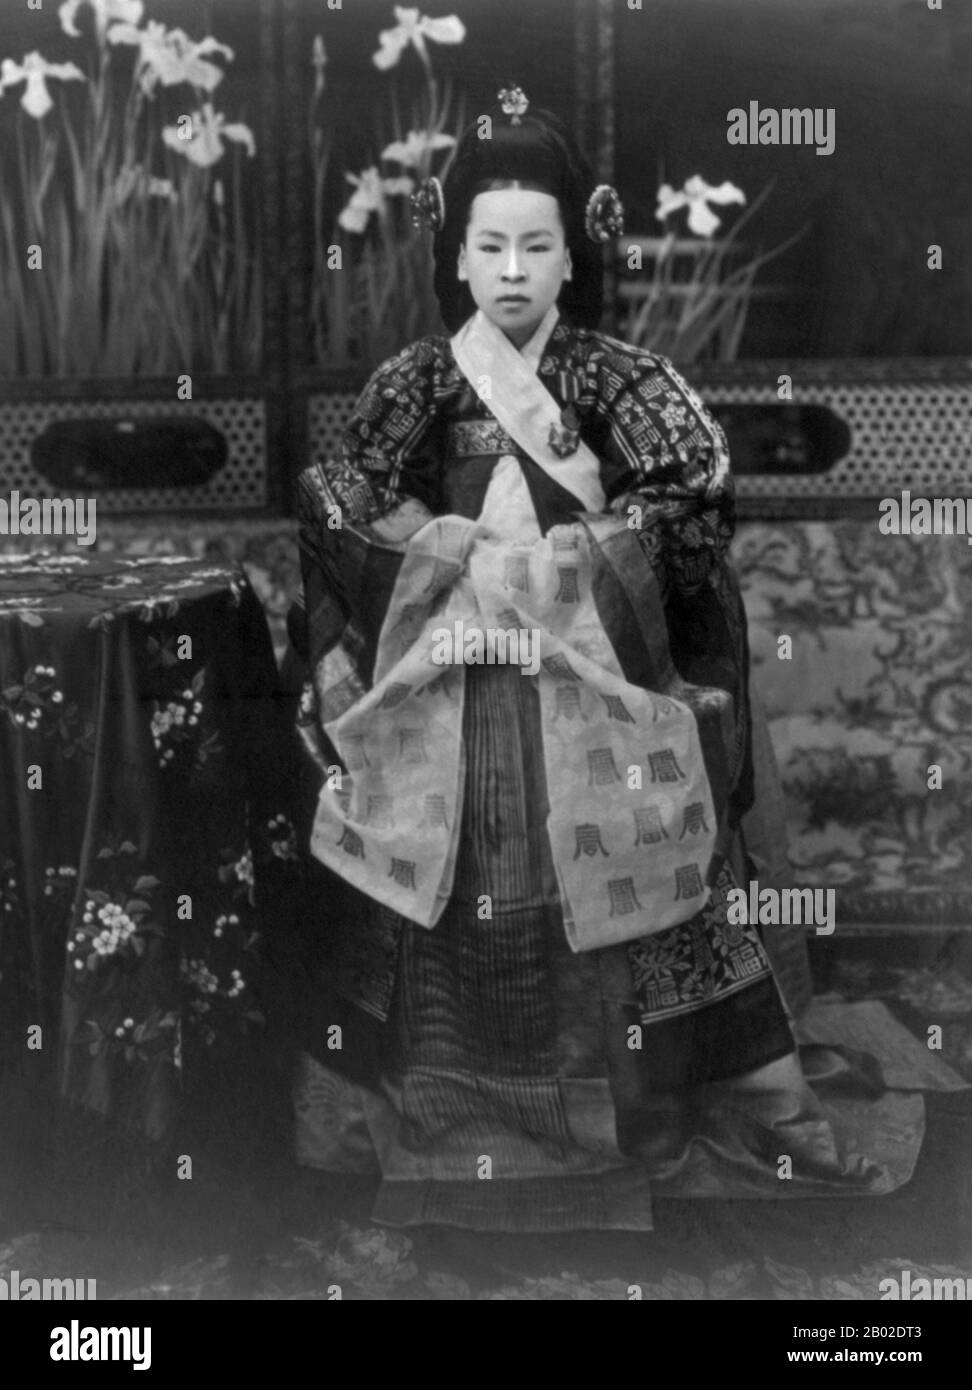 Imperatrice Sunmyeong dell'Impero Coreano (20 novembre 1872 – 20 luglio 1907) è stata la consorte dell'imperatore Yunghui, ultimo imperatore della dinastia Joseon e della Corea. Sunjong, l'imperatore Yunghui (1874-1926), era il secondo figlio dell'imperatore Gojong e servì come secondo (e ultimo) imperatore di Corea della dinastia Yi. Il suo regno durò solo dal 1907 al 1910, quando fu costretto ad abdicare dal Giappone, e visse per il resto della sua vita praticamente imprigionato nel suo palazzo. Foto Stock